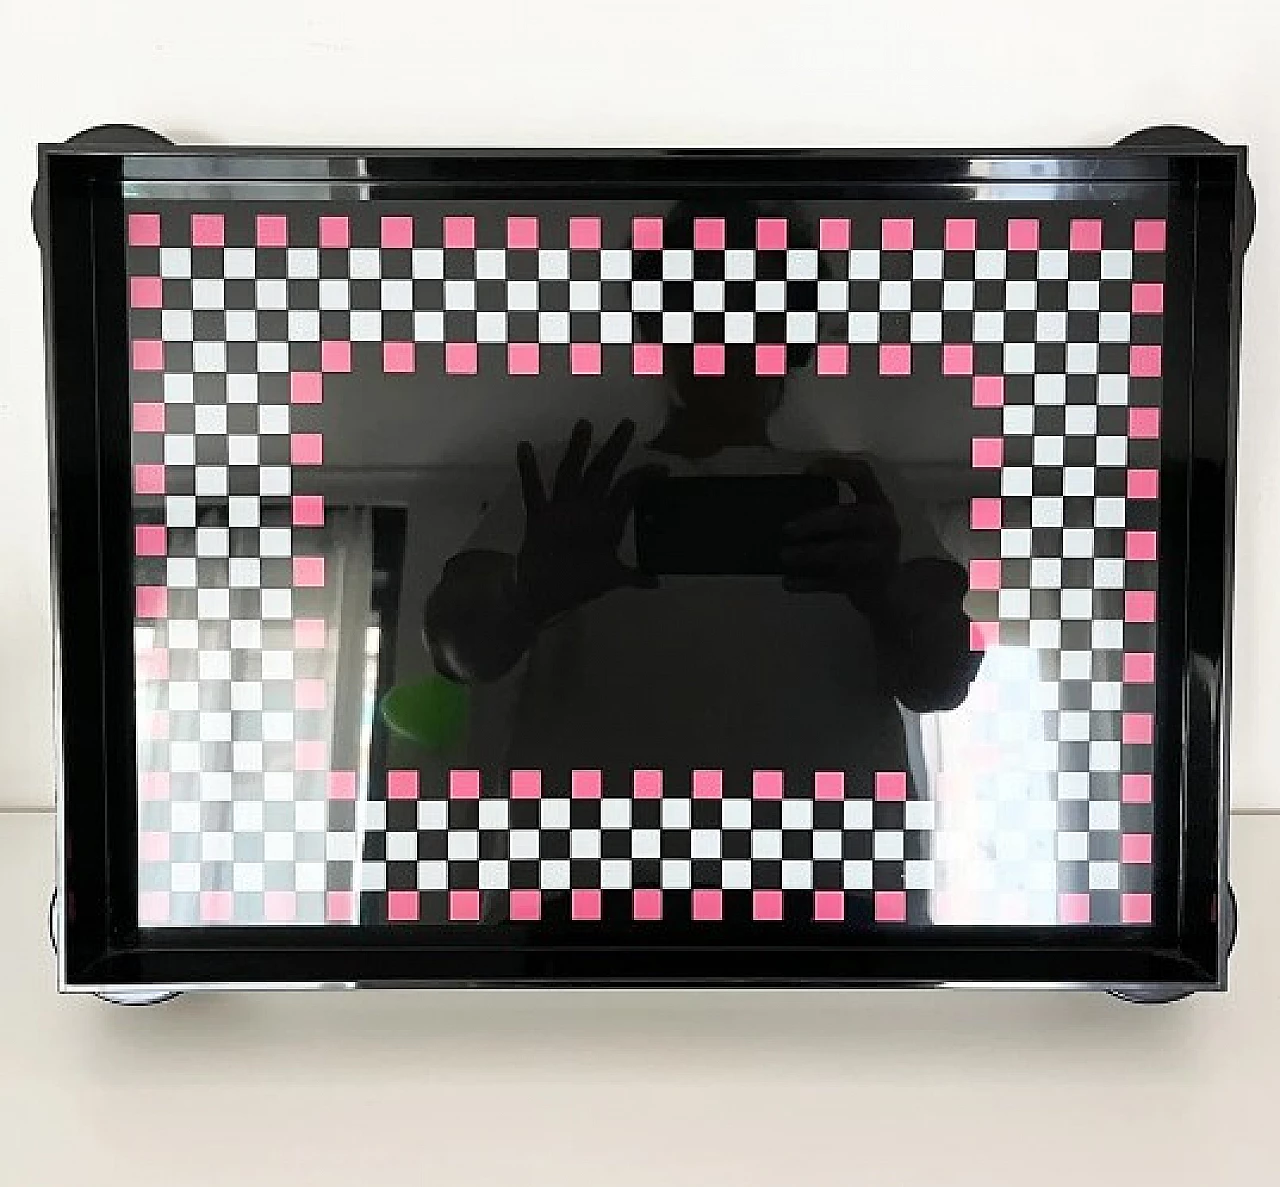 Memphis plastic checkered tray by Matteo Thun for WMF La Galleria, 1986 2